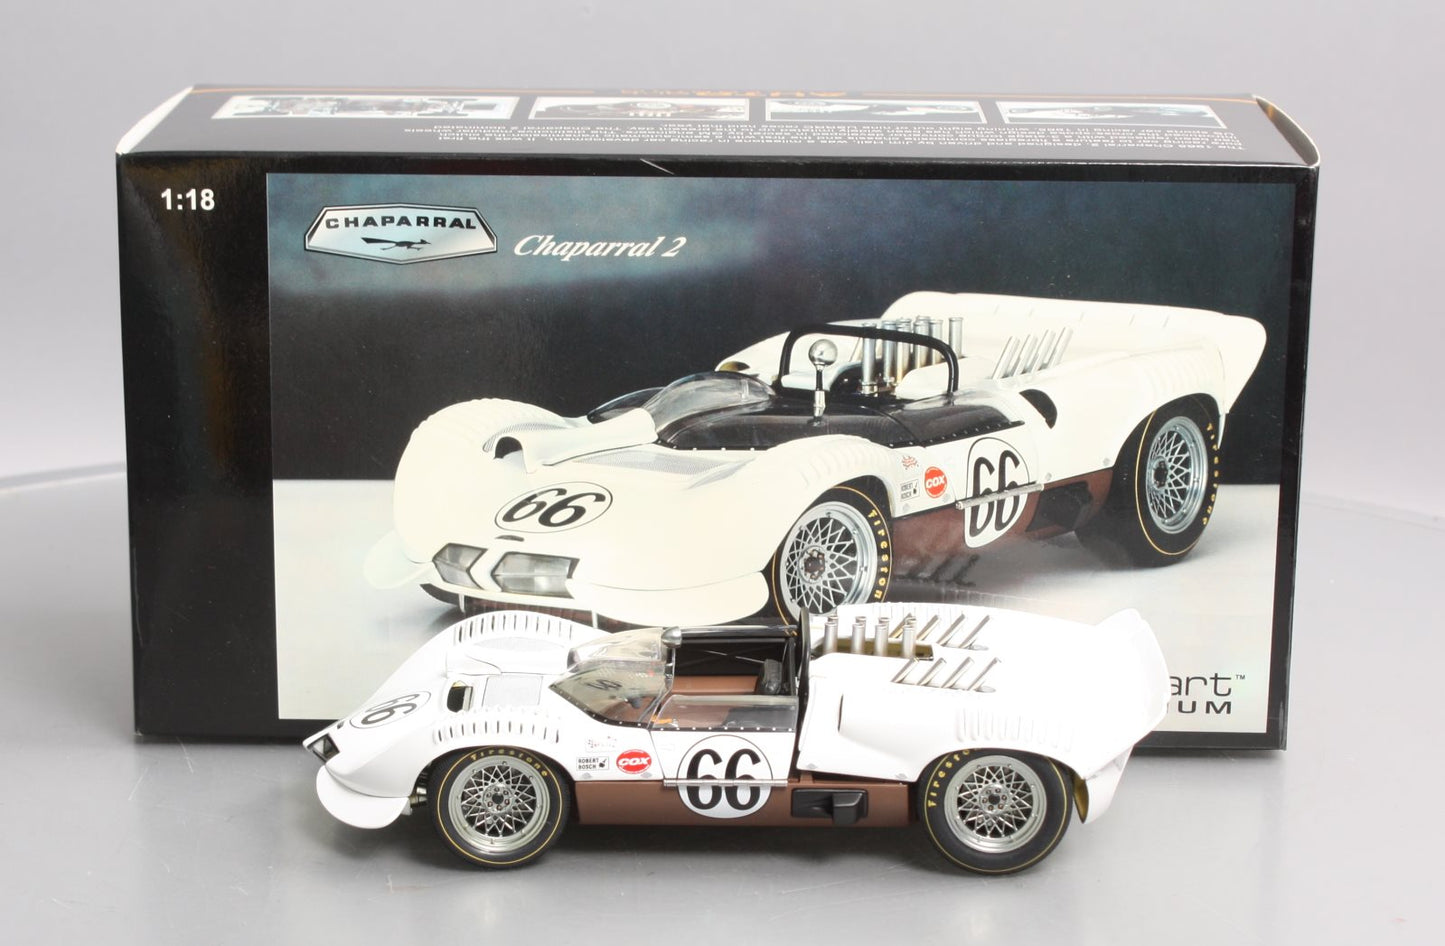 AutoArt Millennium 86946 1/18 Die-Cast 1965 Chaparral 2 Sport Racer #66/Box